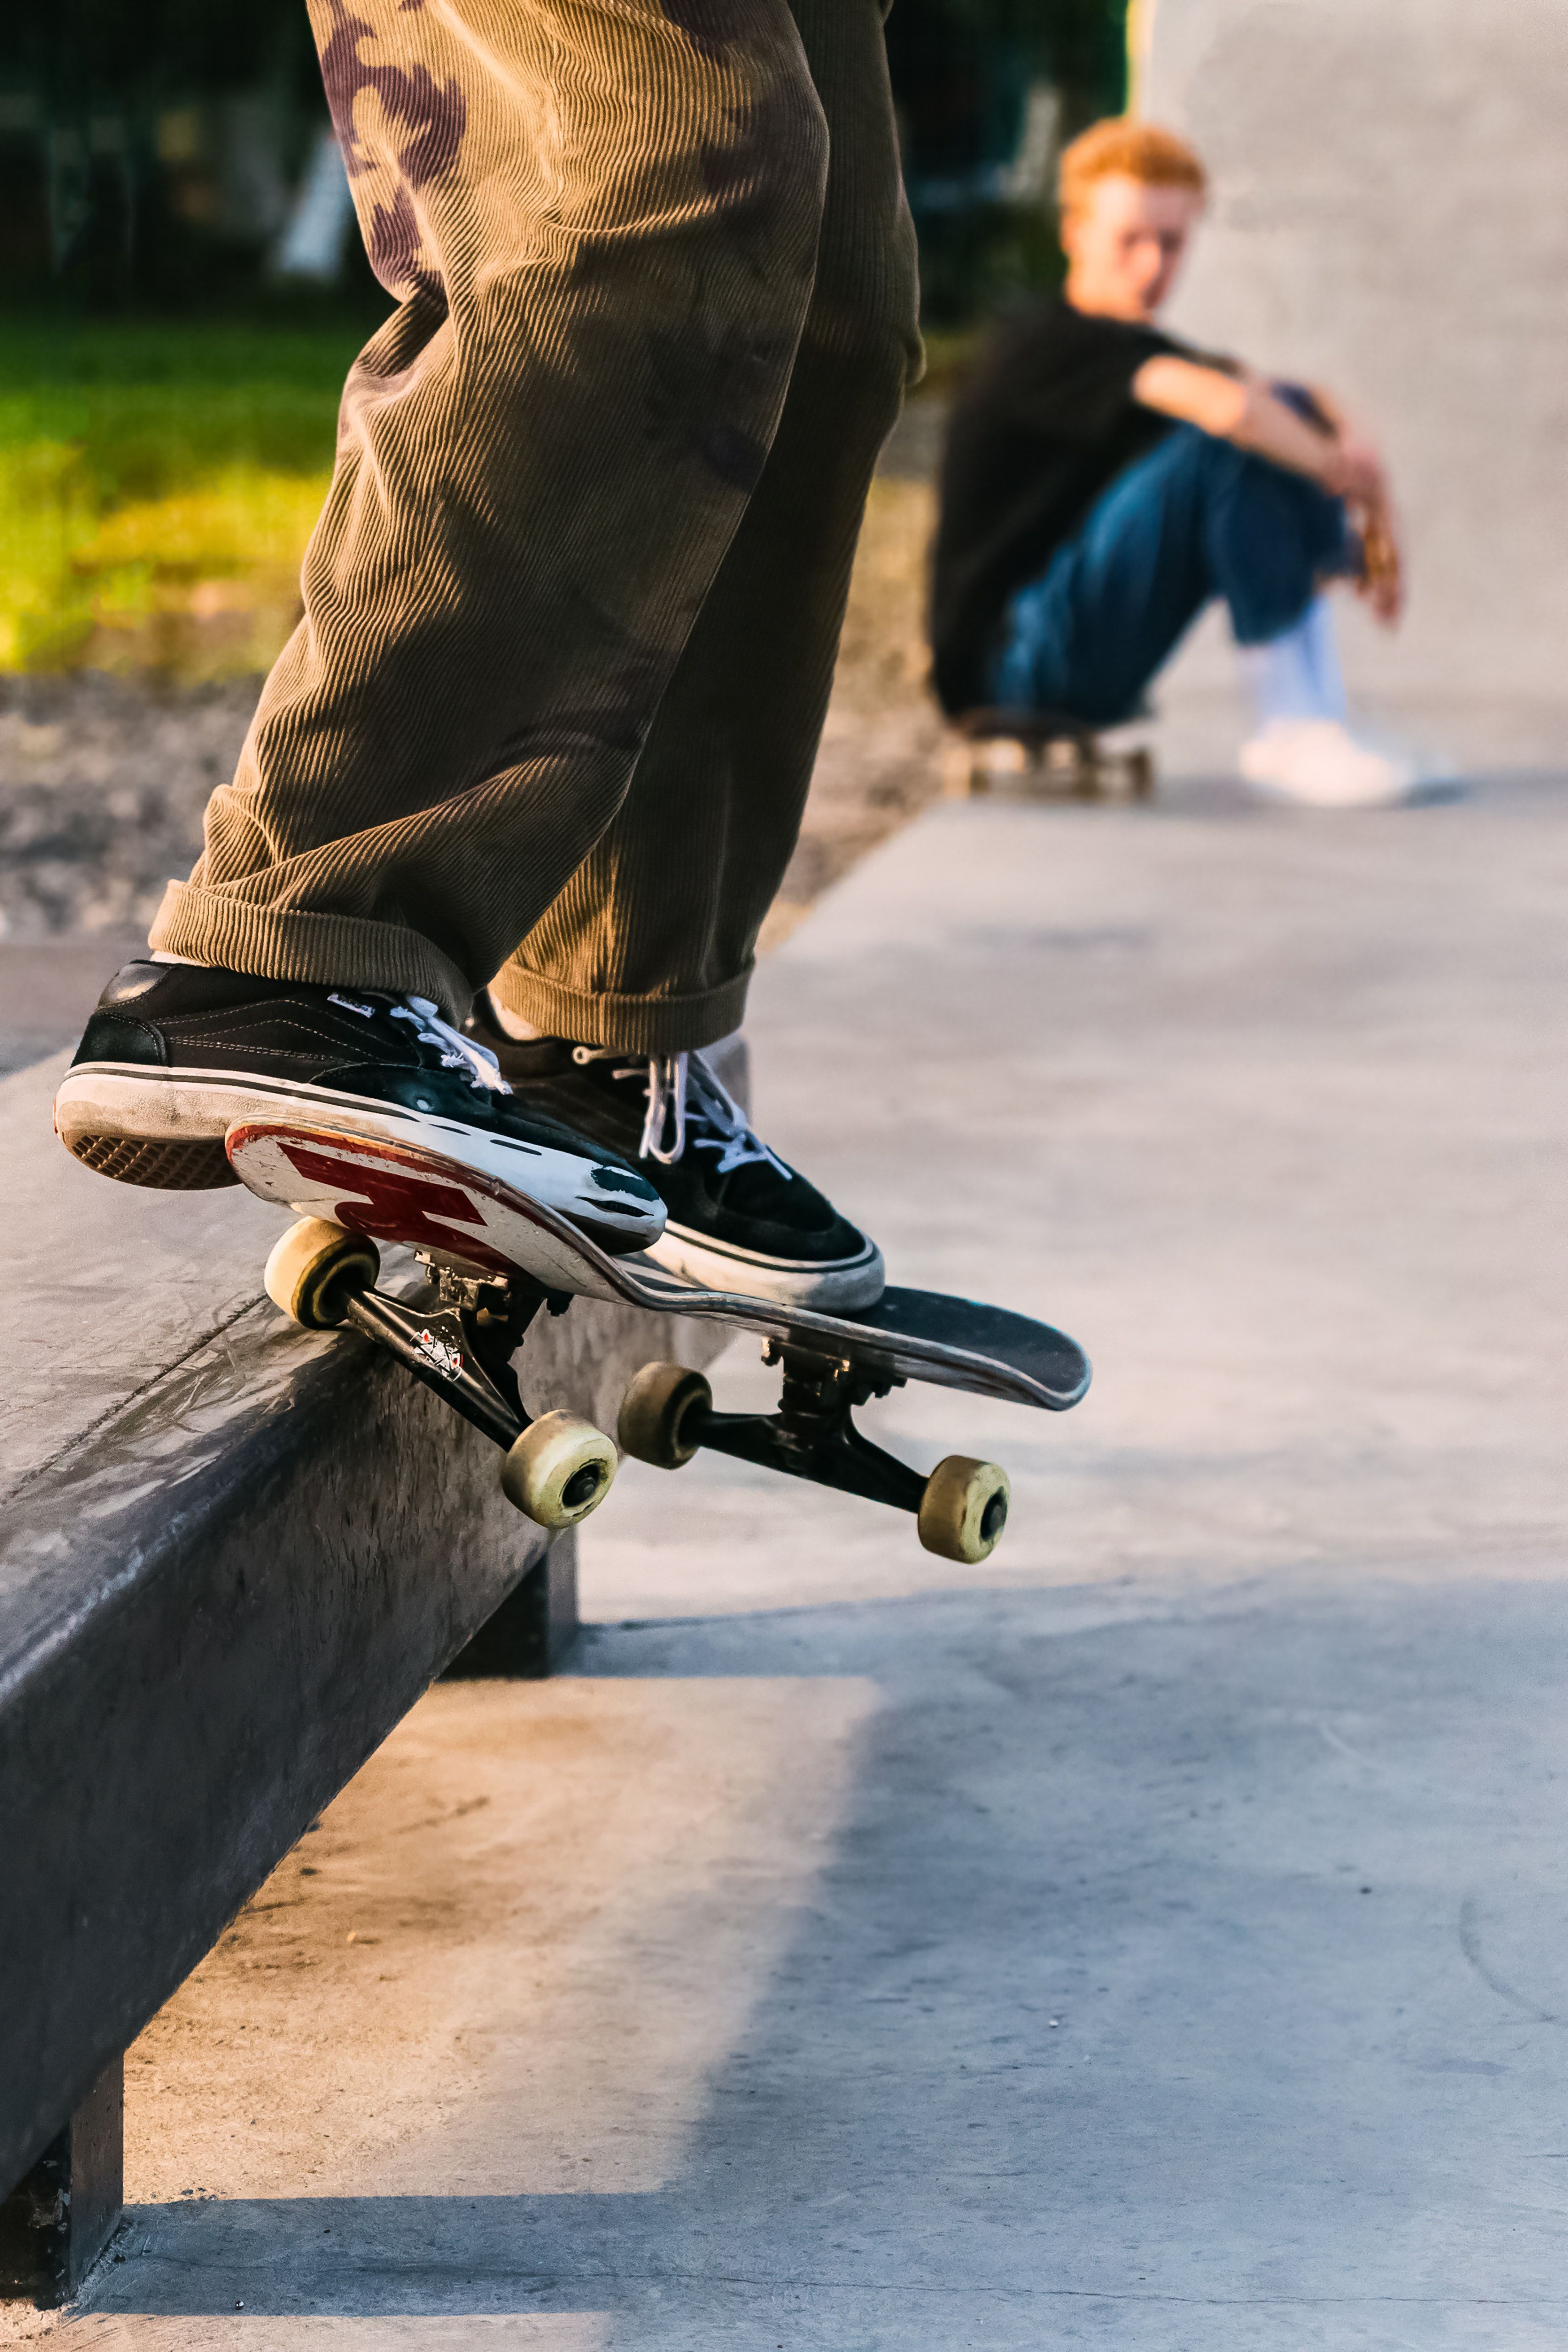 Skater Doing Tricks on Skateboard · Free